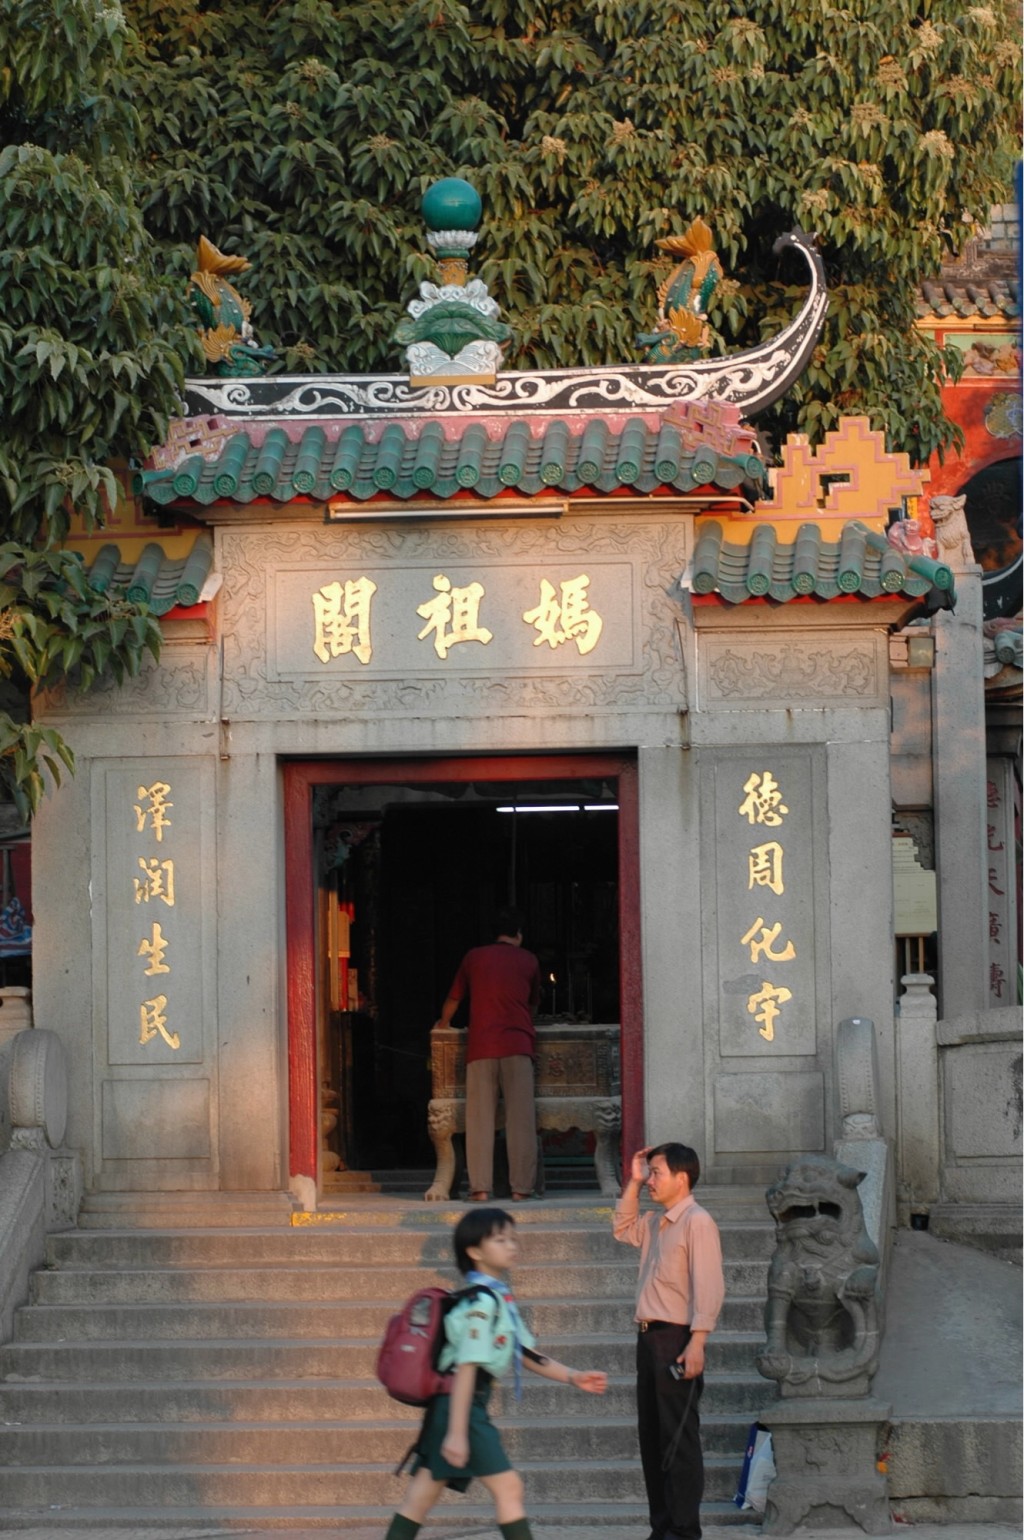 妈祖阁在建筑上具闽南特色，是澳门现存最古老的庙宇。